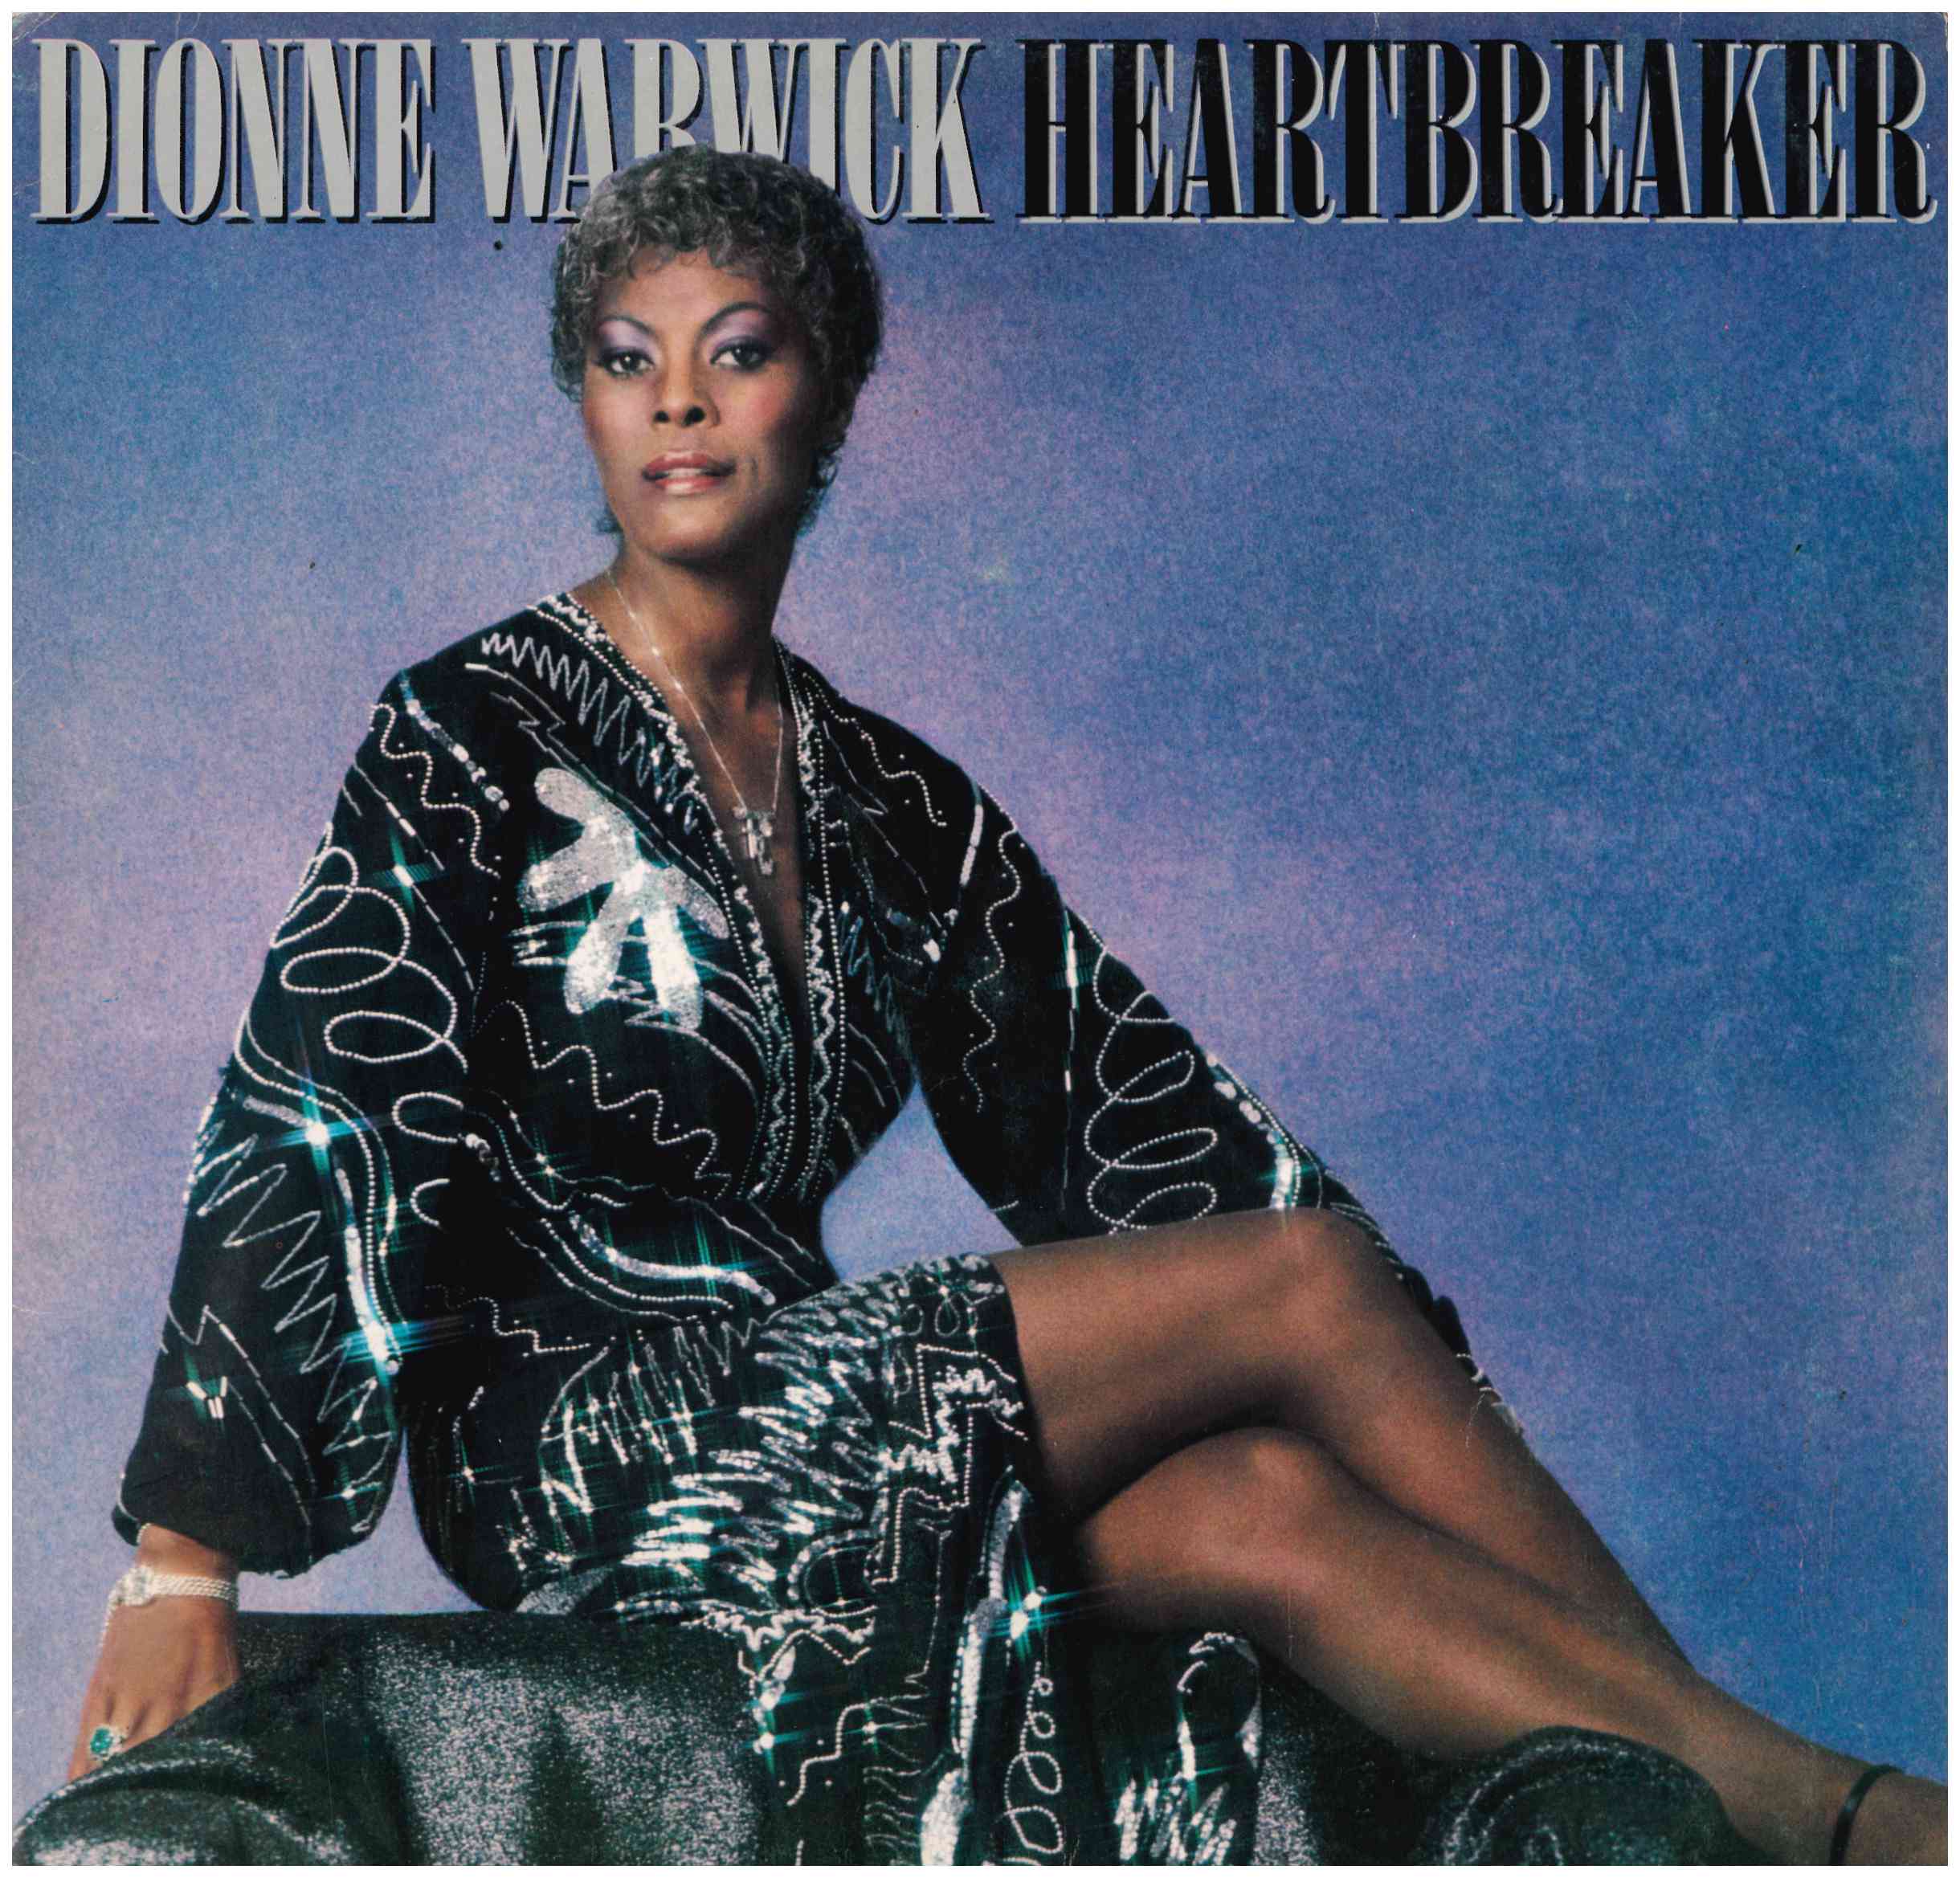 Dionne Warwik. Heartbreaker. Arista 1982 (I-204. 974)